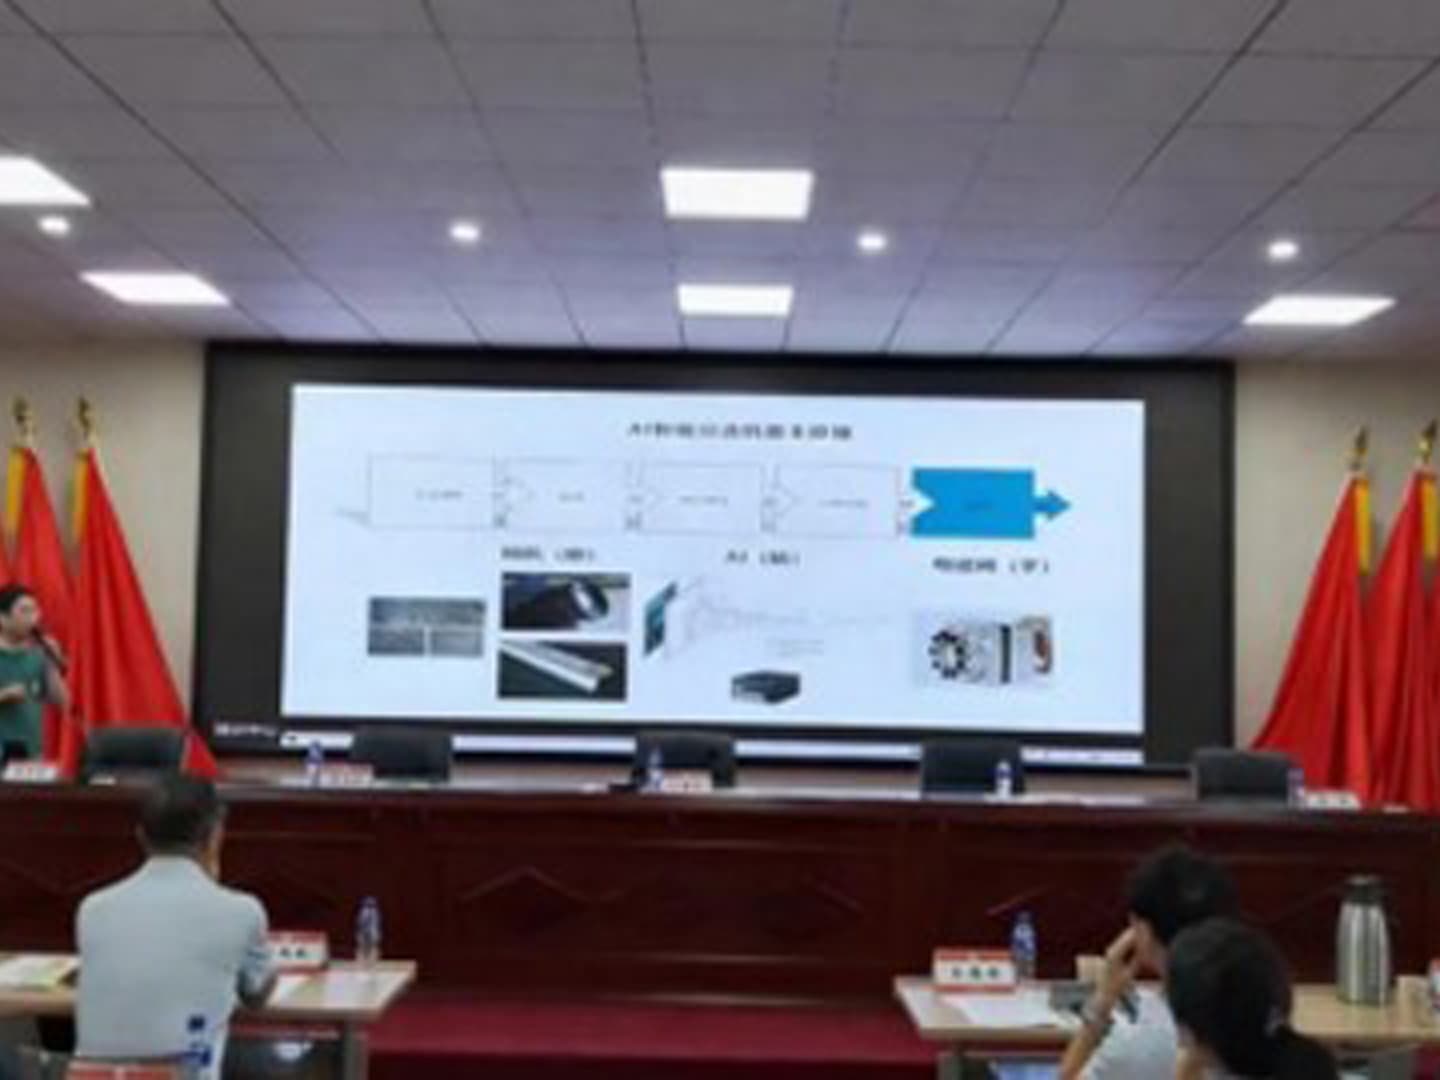 Shandong Gold celebró una reunión de intercambio de tecnología de procesamiento de minerales. Mingde fue invitado